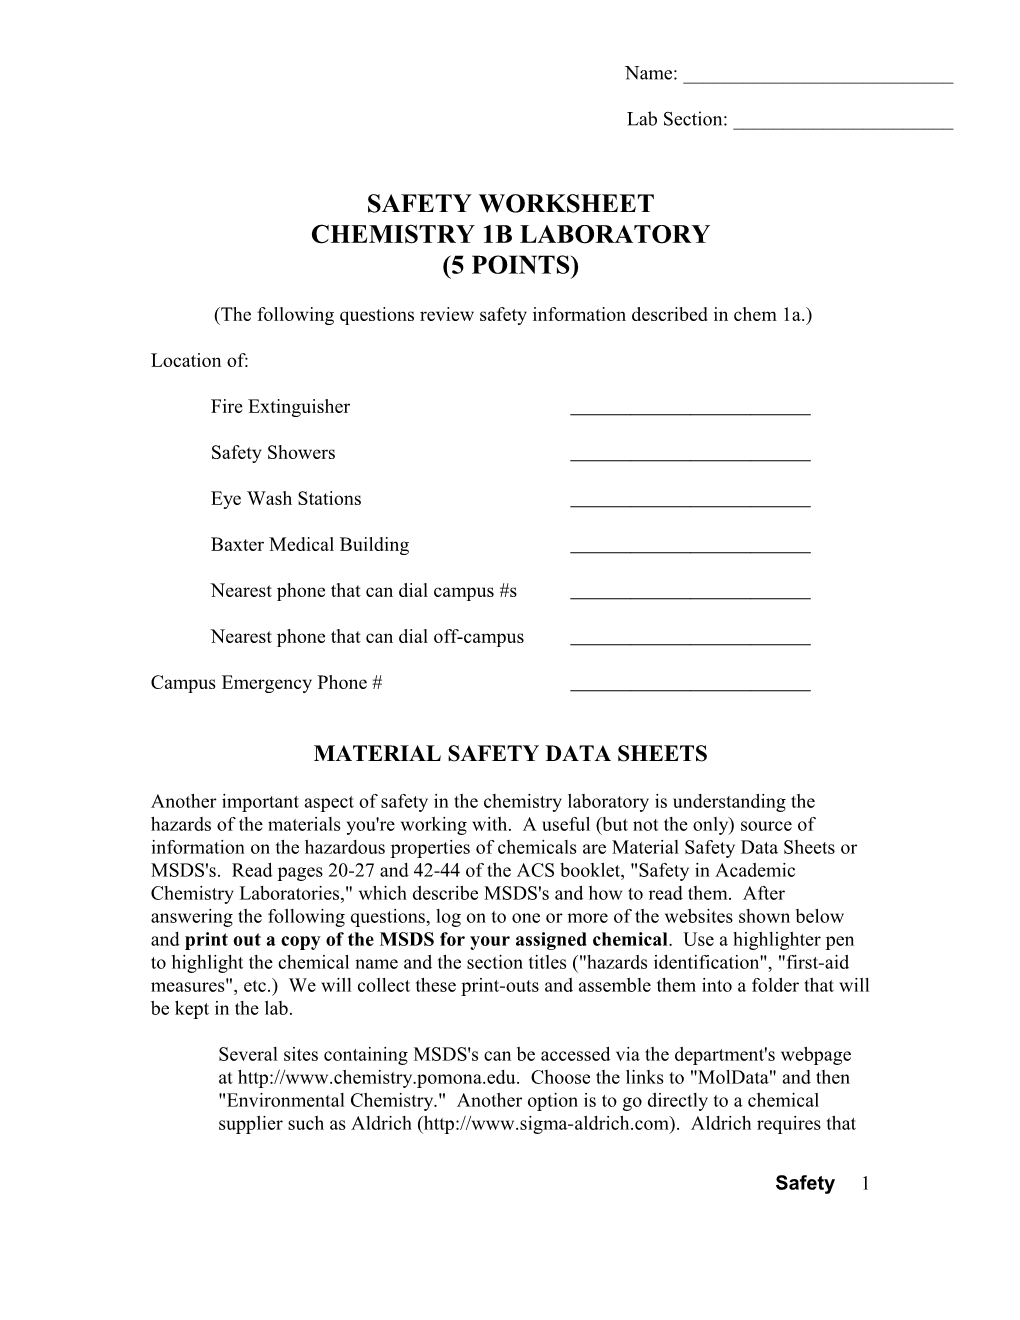 Safety Worksheet